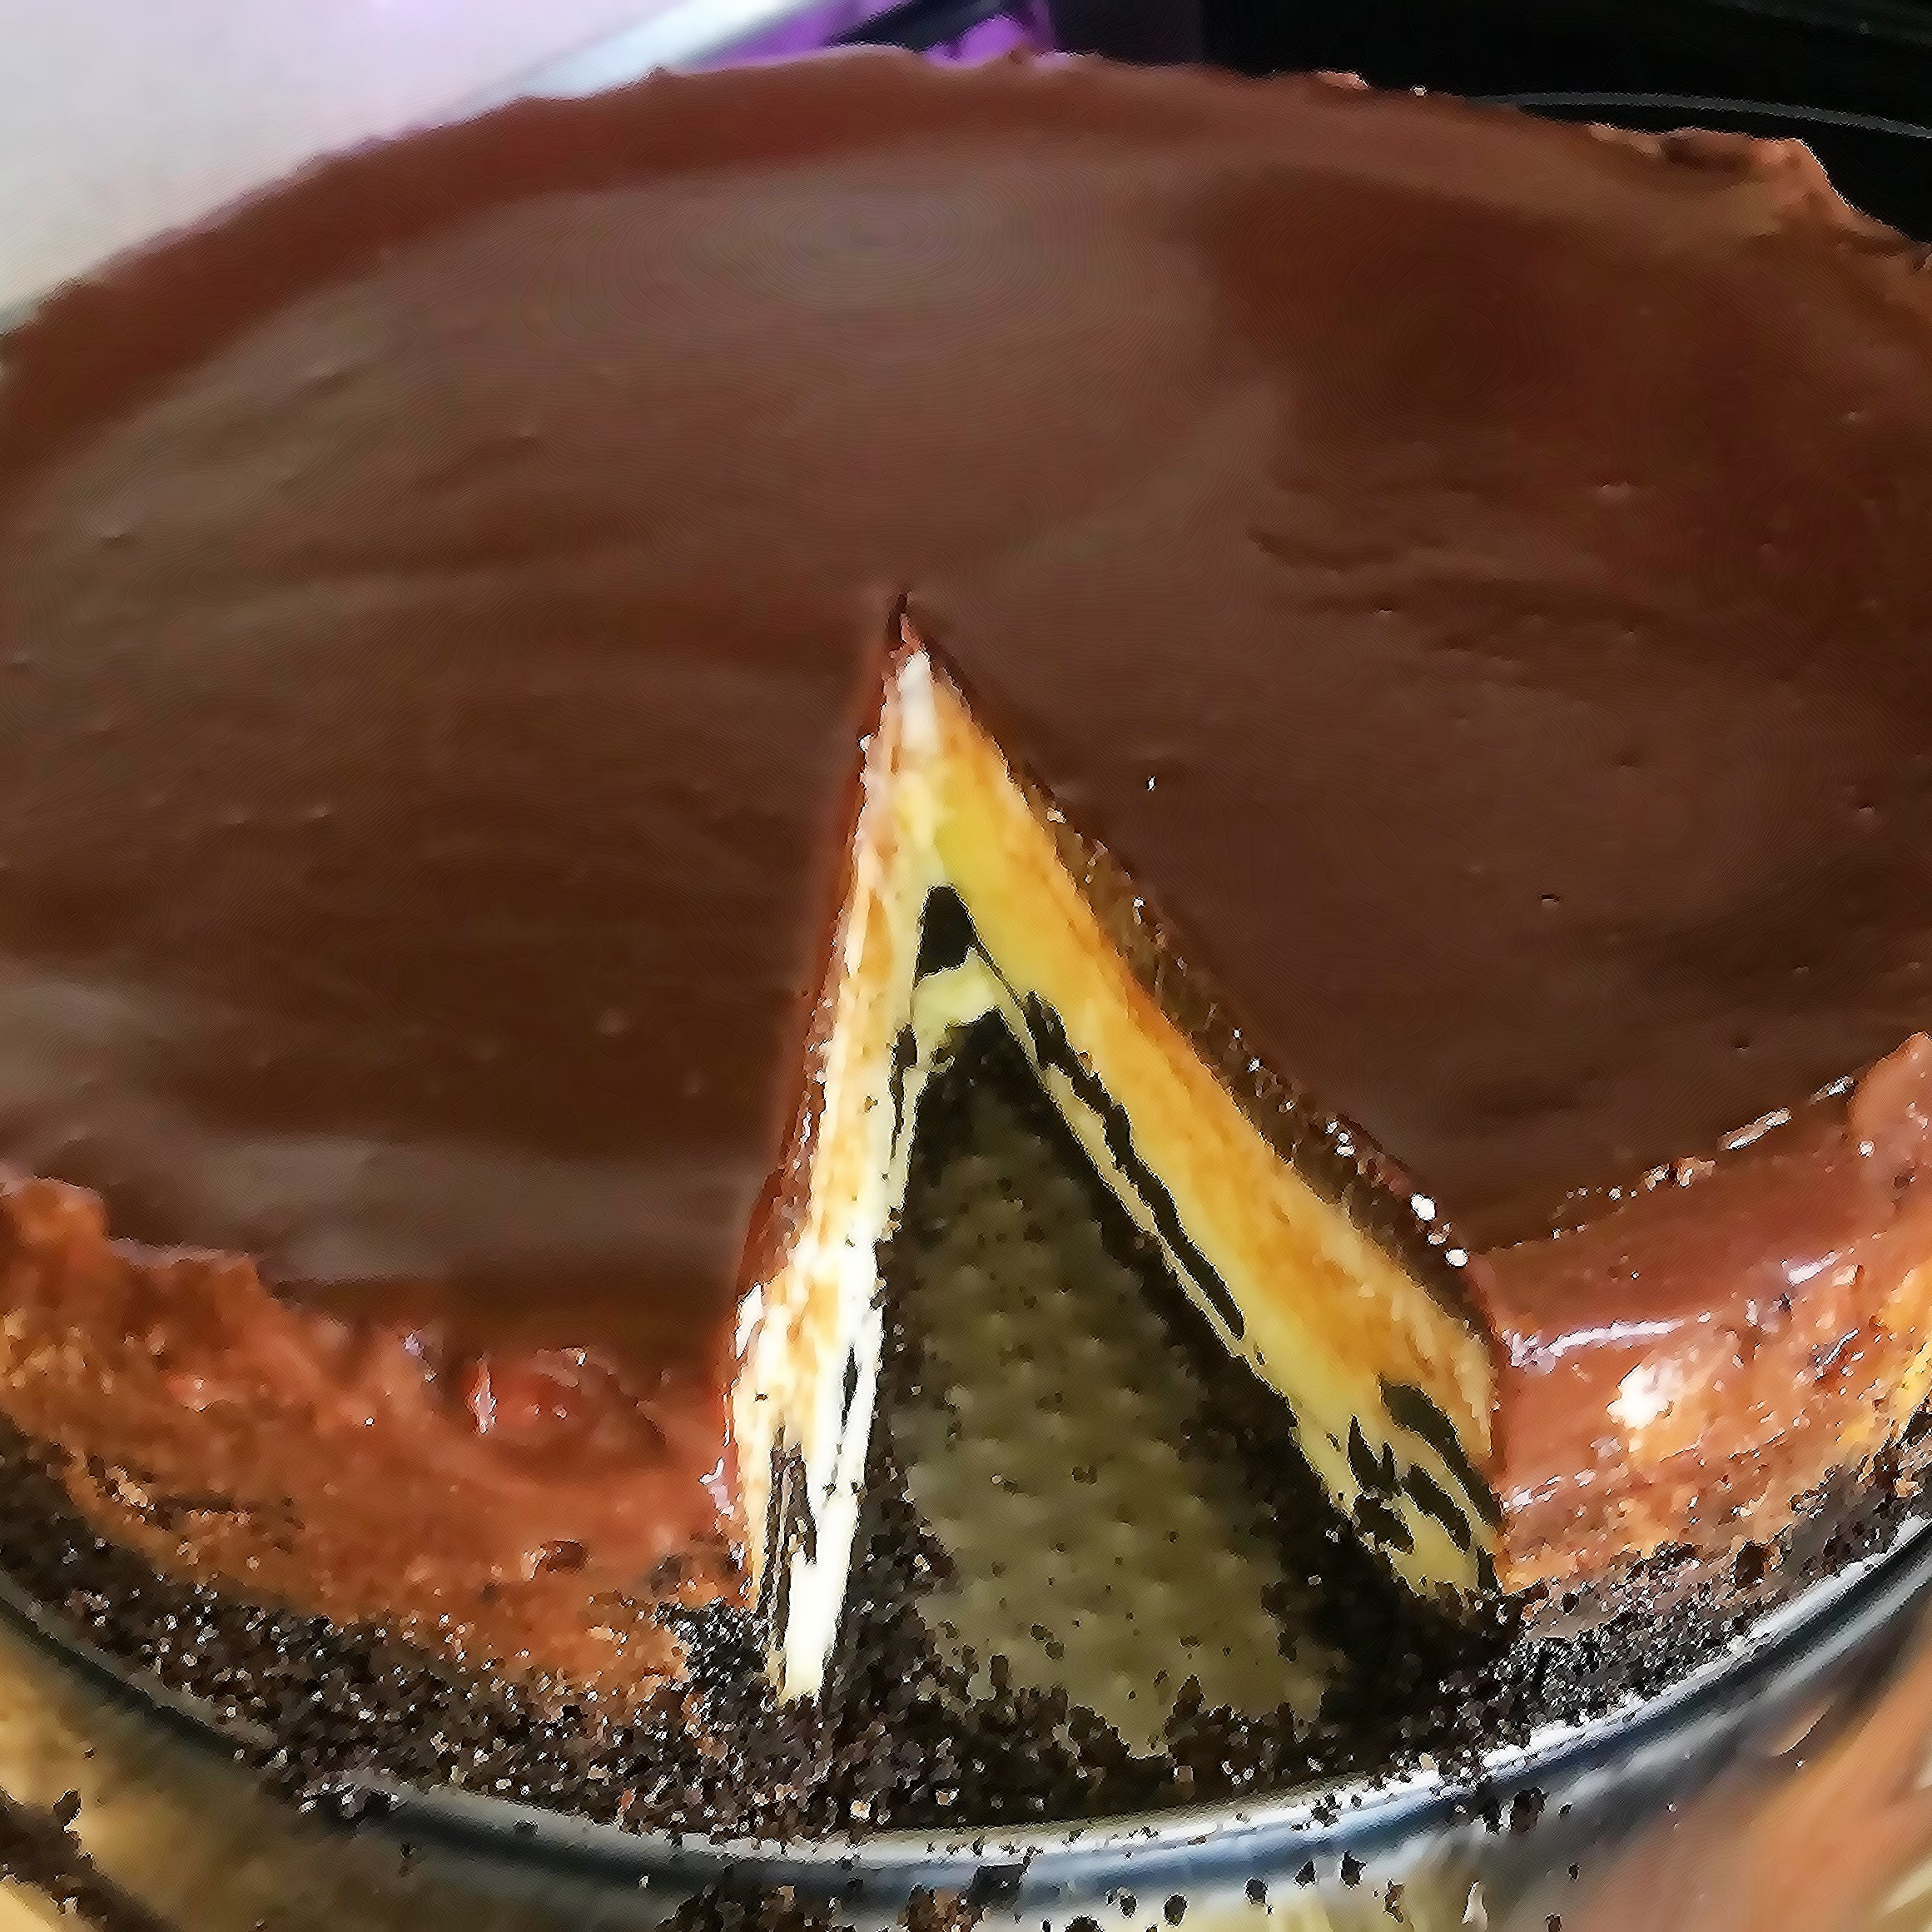 Chocolate Cookie Cheesecake Adalberto